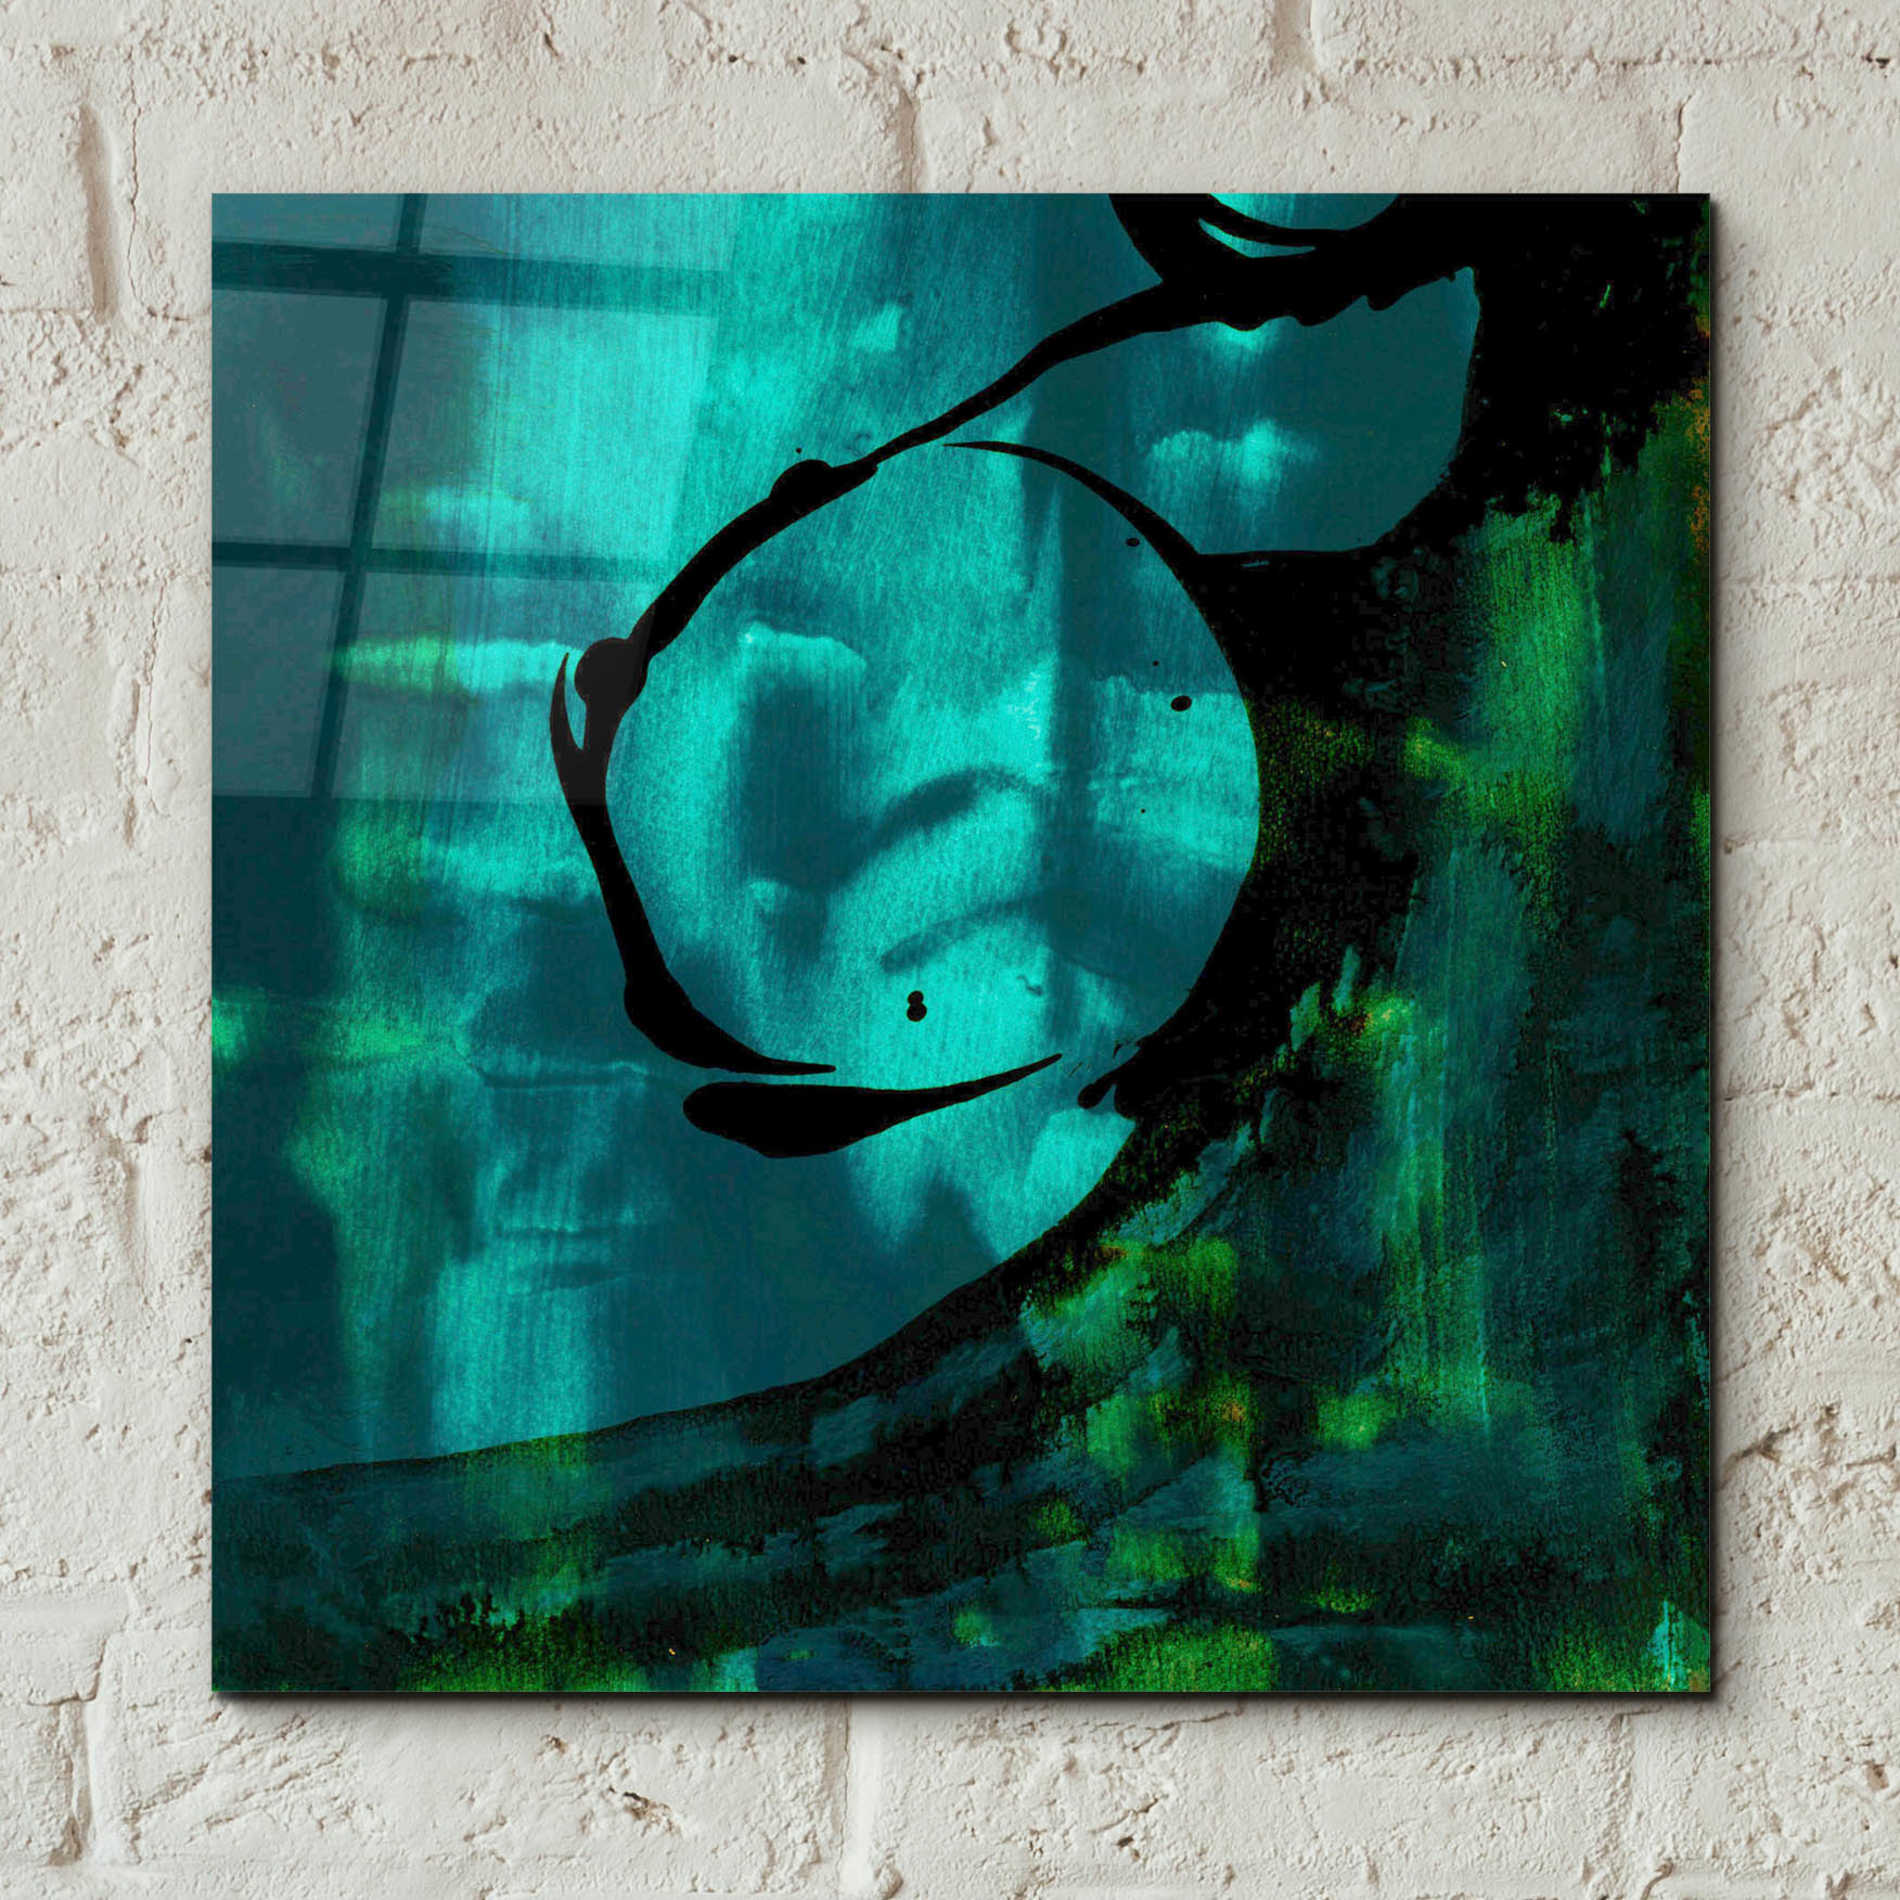 Epic Art 'Turquoise Element III' by Sisa Jasper,' Acrylic Glass Wall Art,12x12